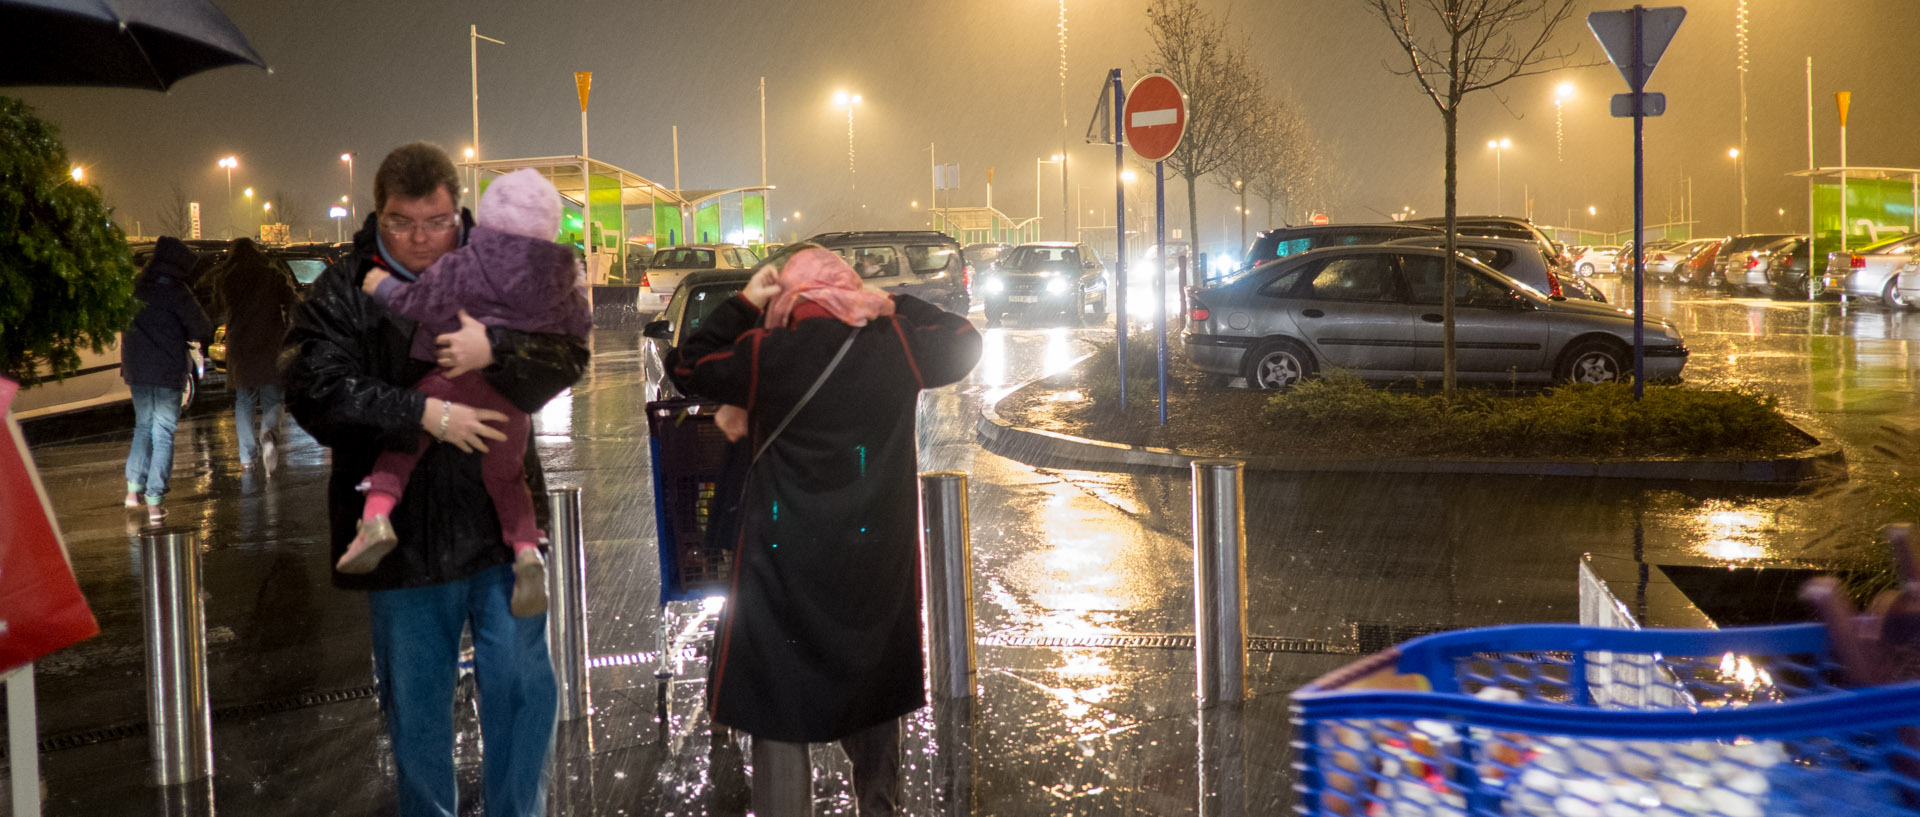 Un père et son enfant sous une averse, dans le parking du centre commercial Carrefour, à Wasquehal.